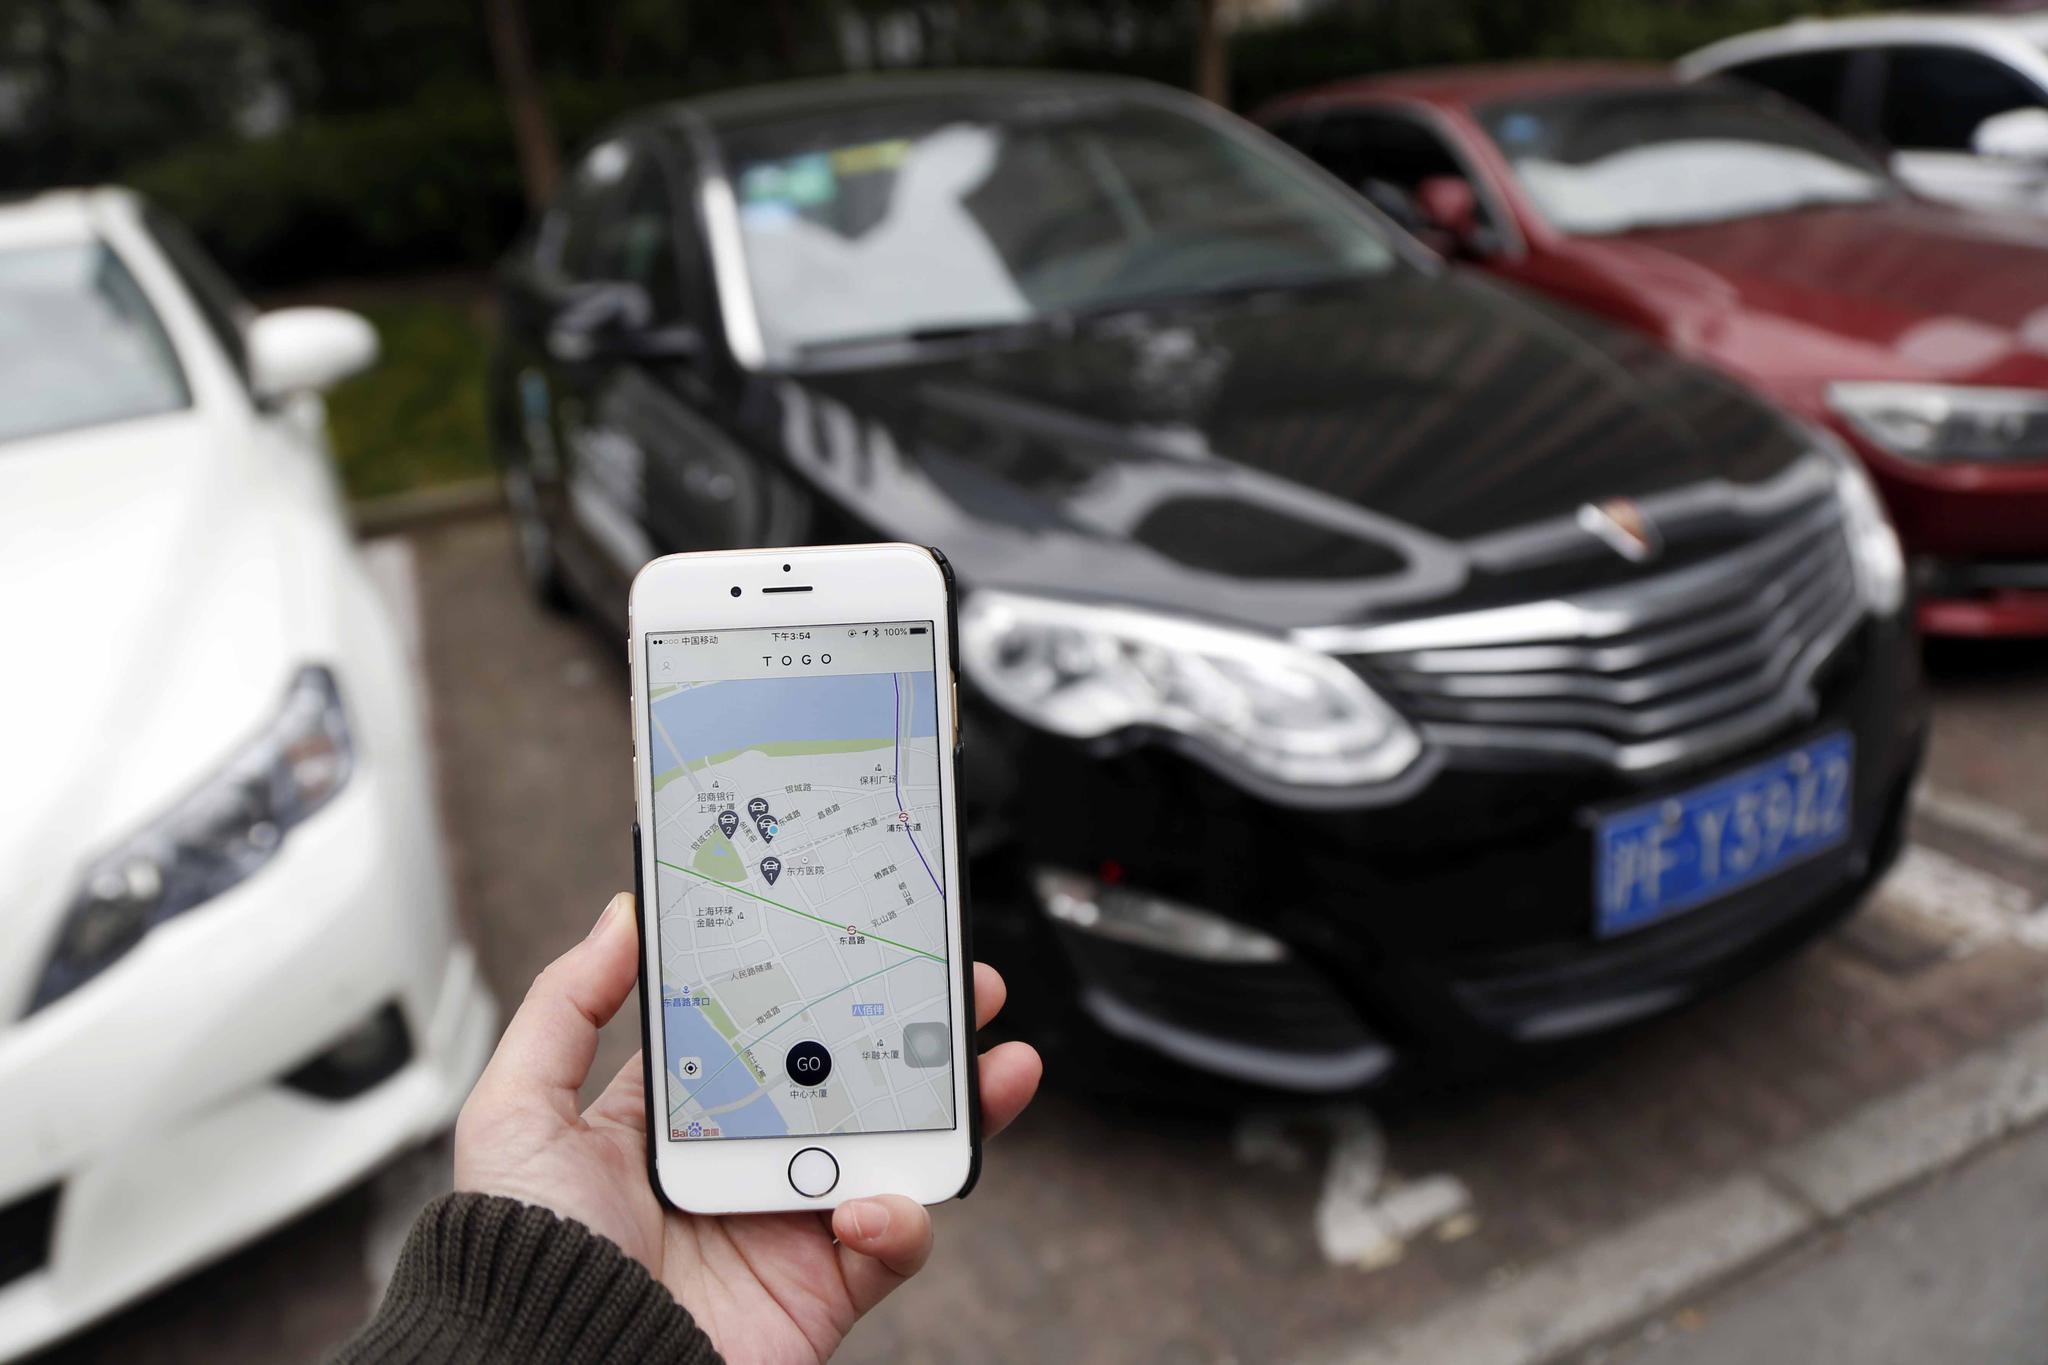 共享汽车登陆上海 记者体验:好处不少障碍不小